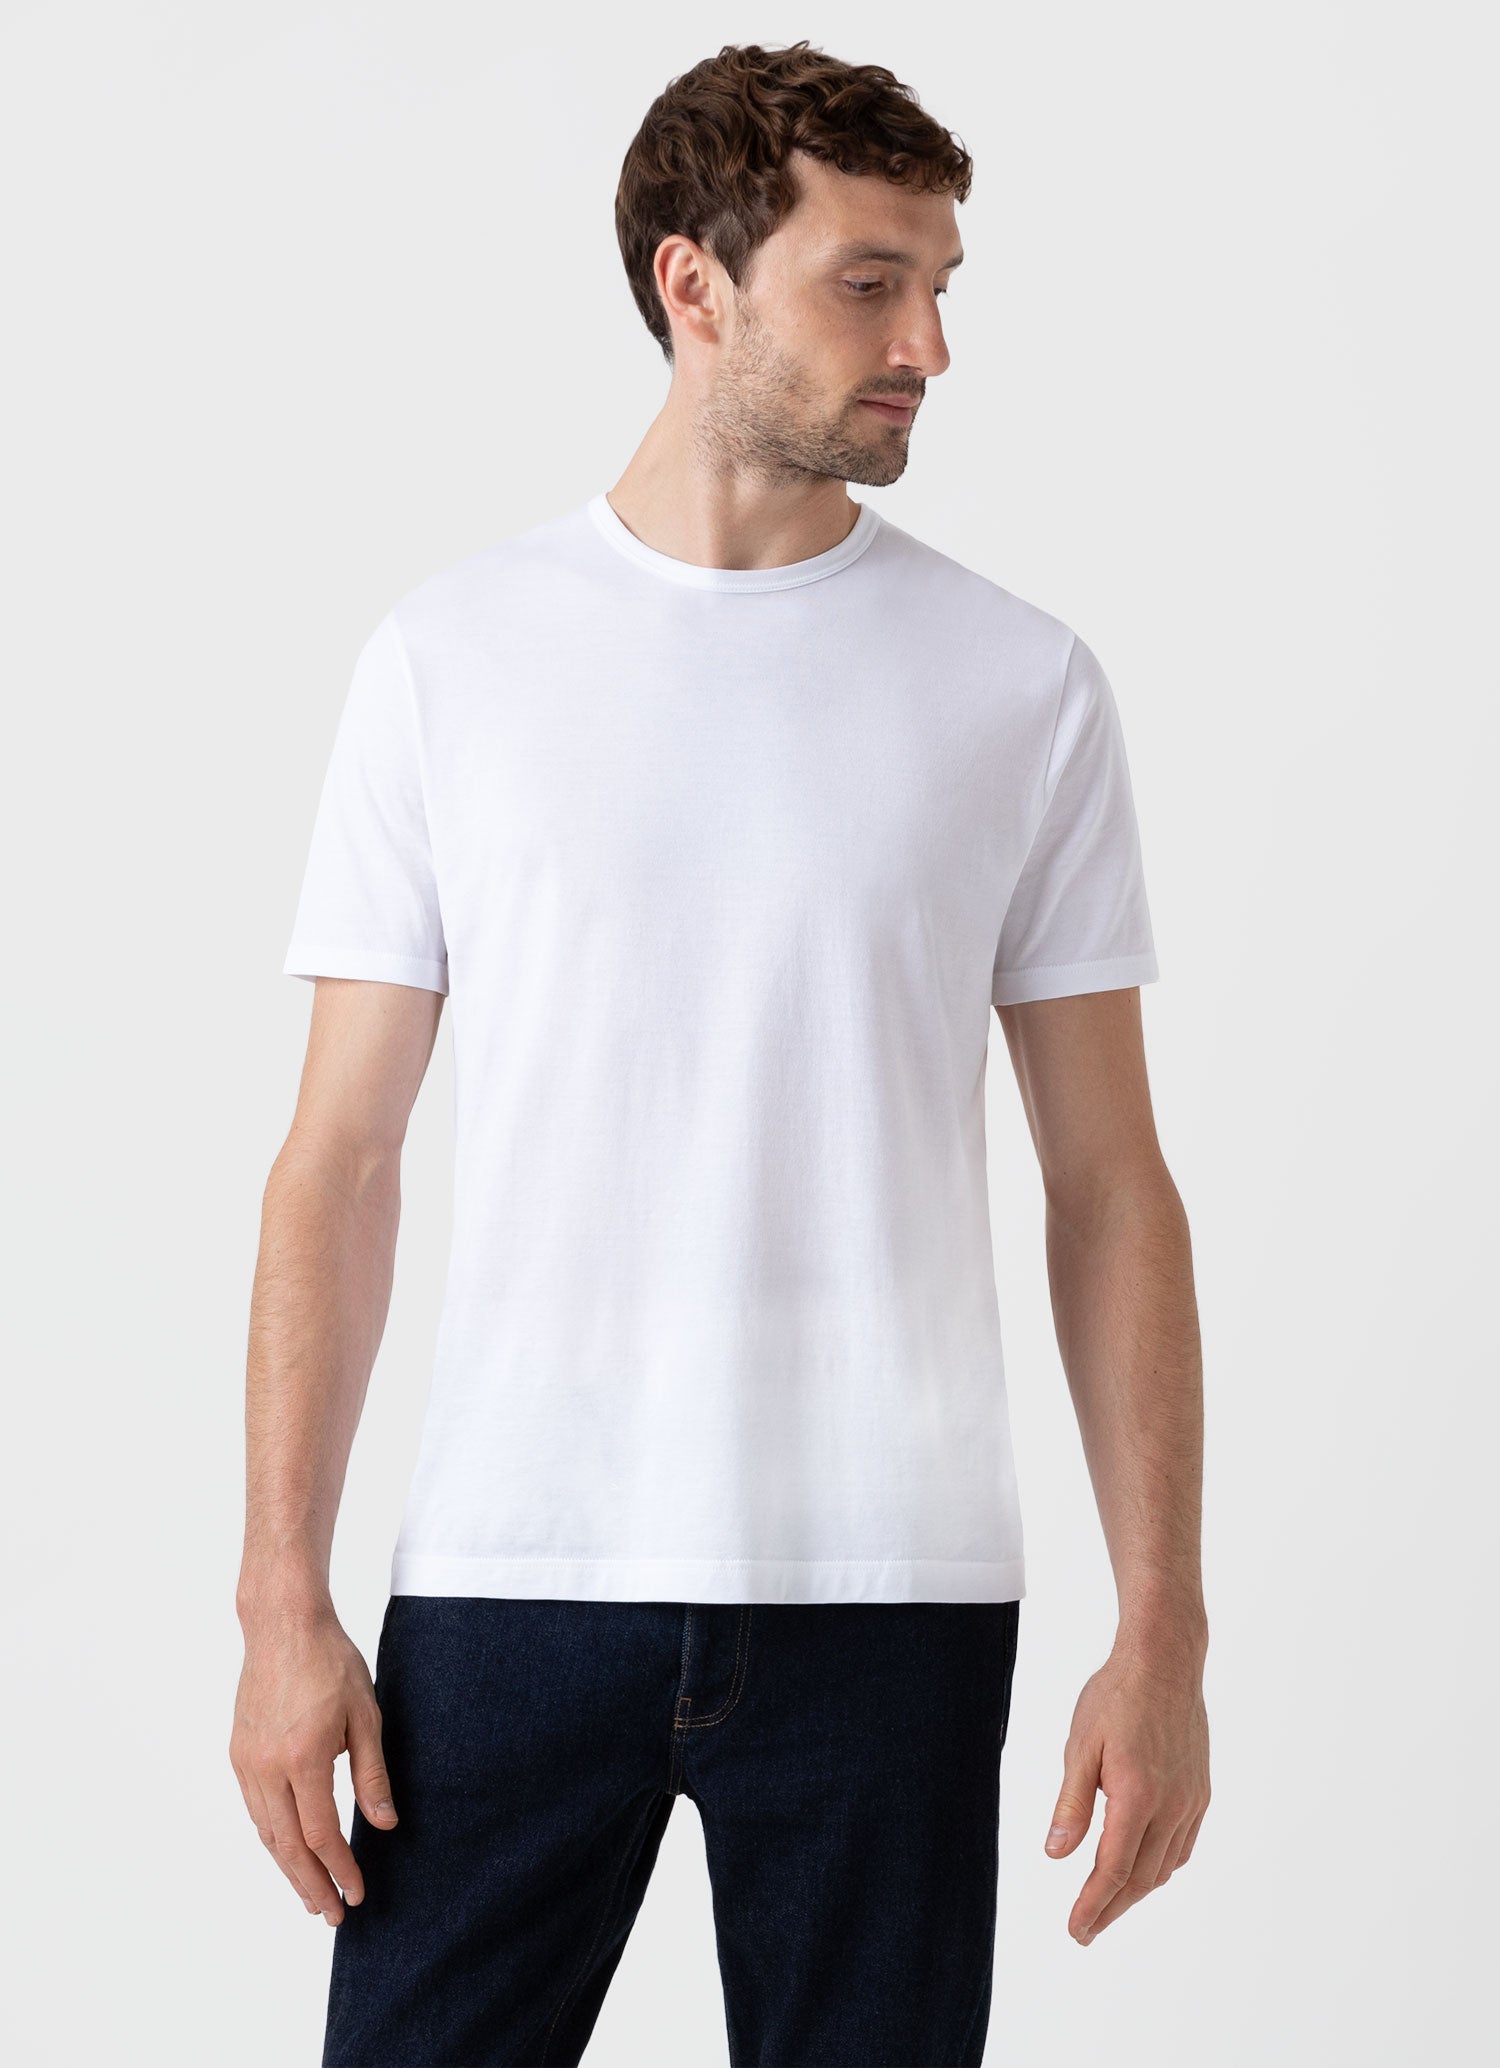 The Sunspel T-shirt | Sunspel